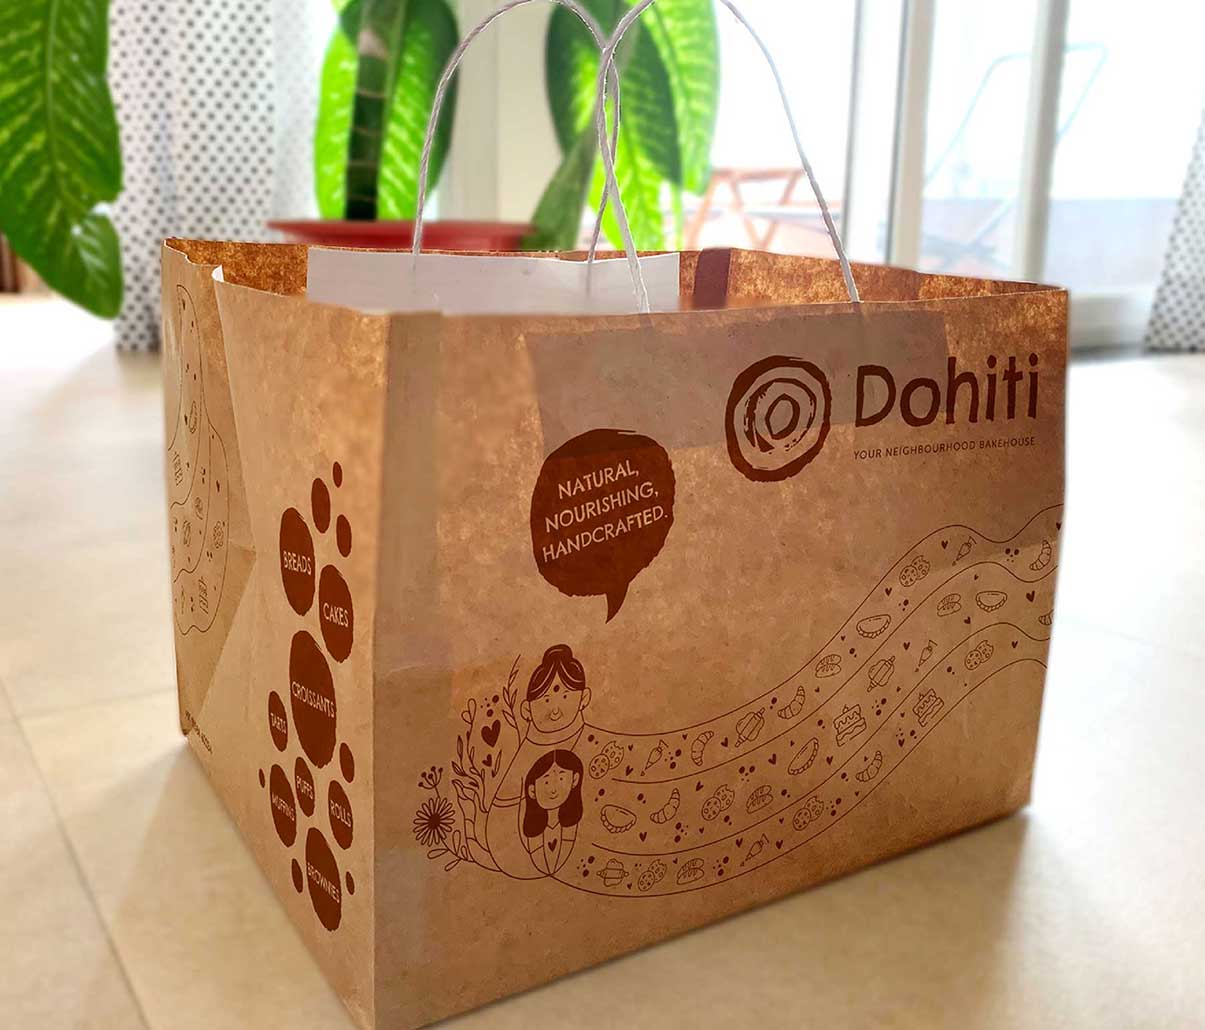 Packaging design for Dohiti Bake House